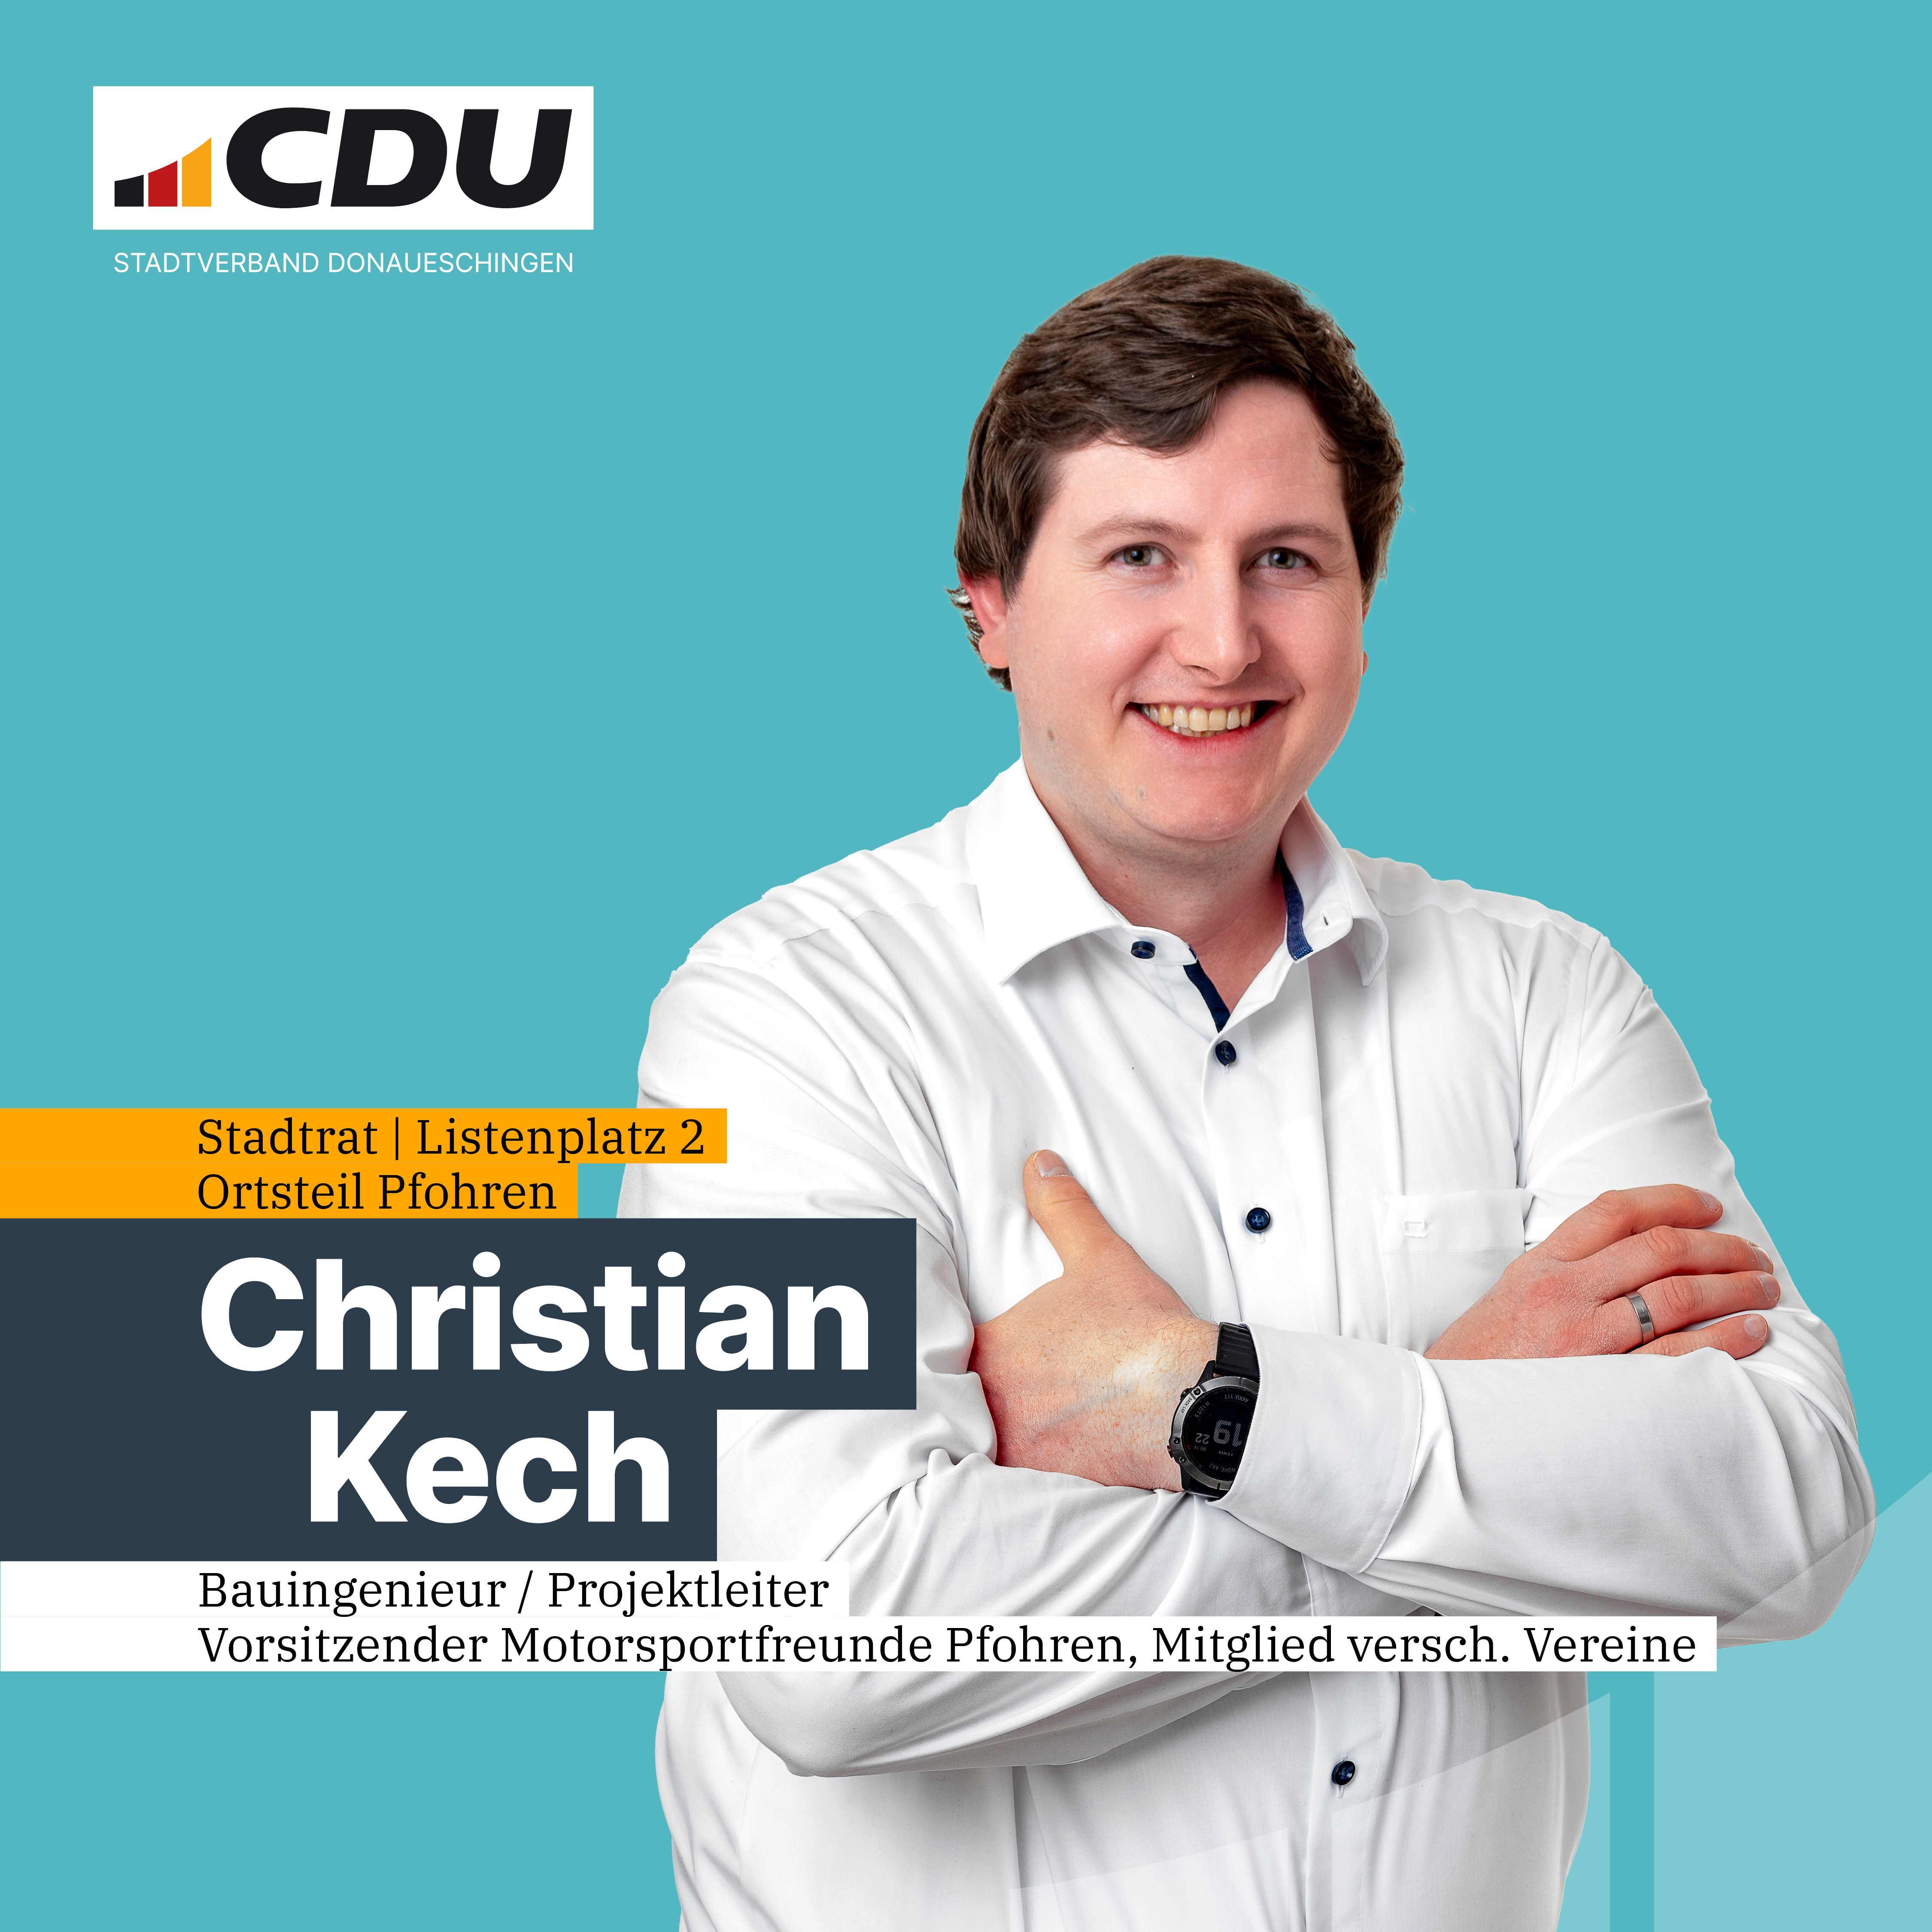  Christian Kech